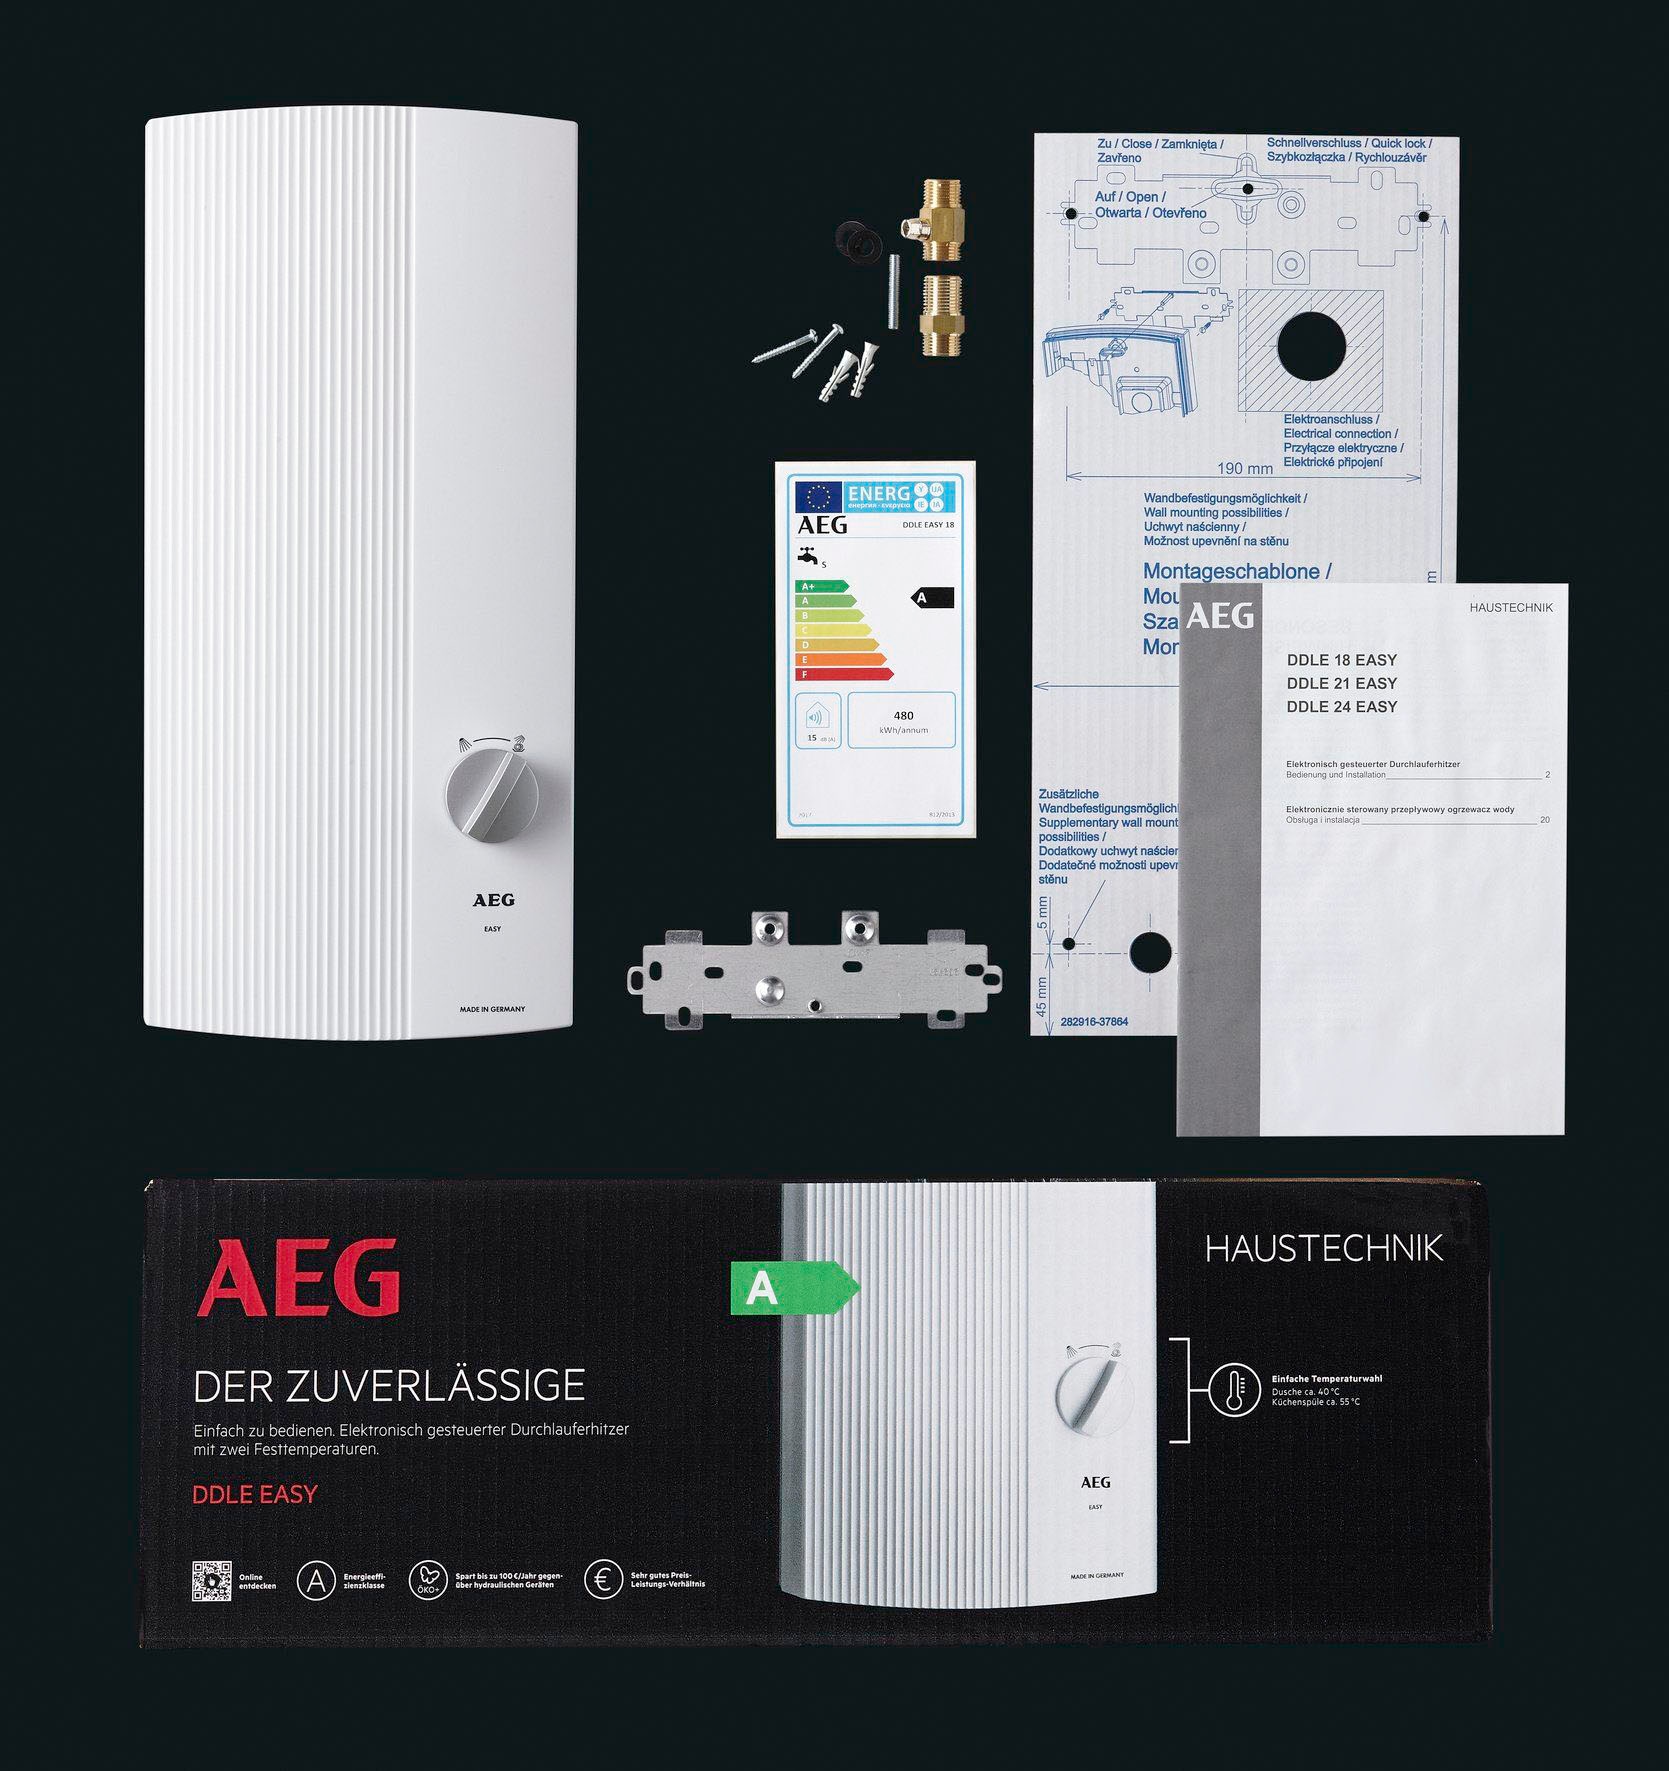 AEG-Haustechnik Komfort-Durchlauferhitzer »DDLE EASY 21 kW, guter Warmwasserkomfort«, zwei feste Temperatureinstellungen für Dusche und Spüle